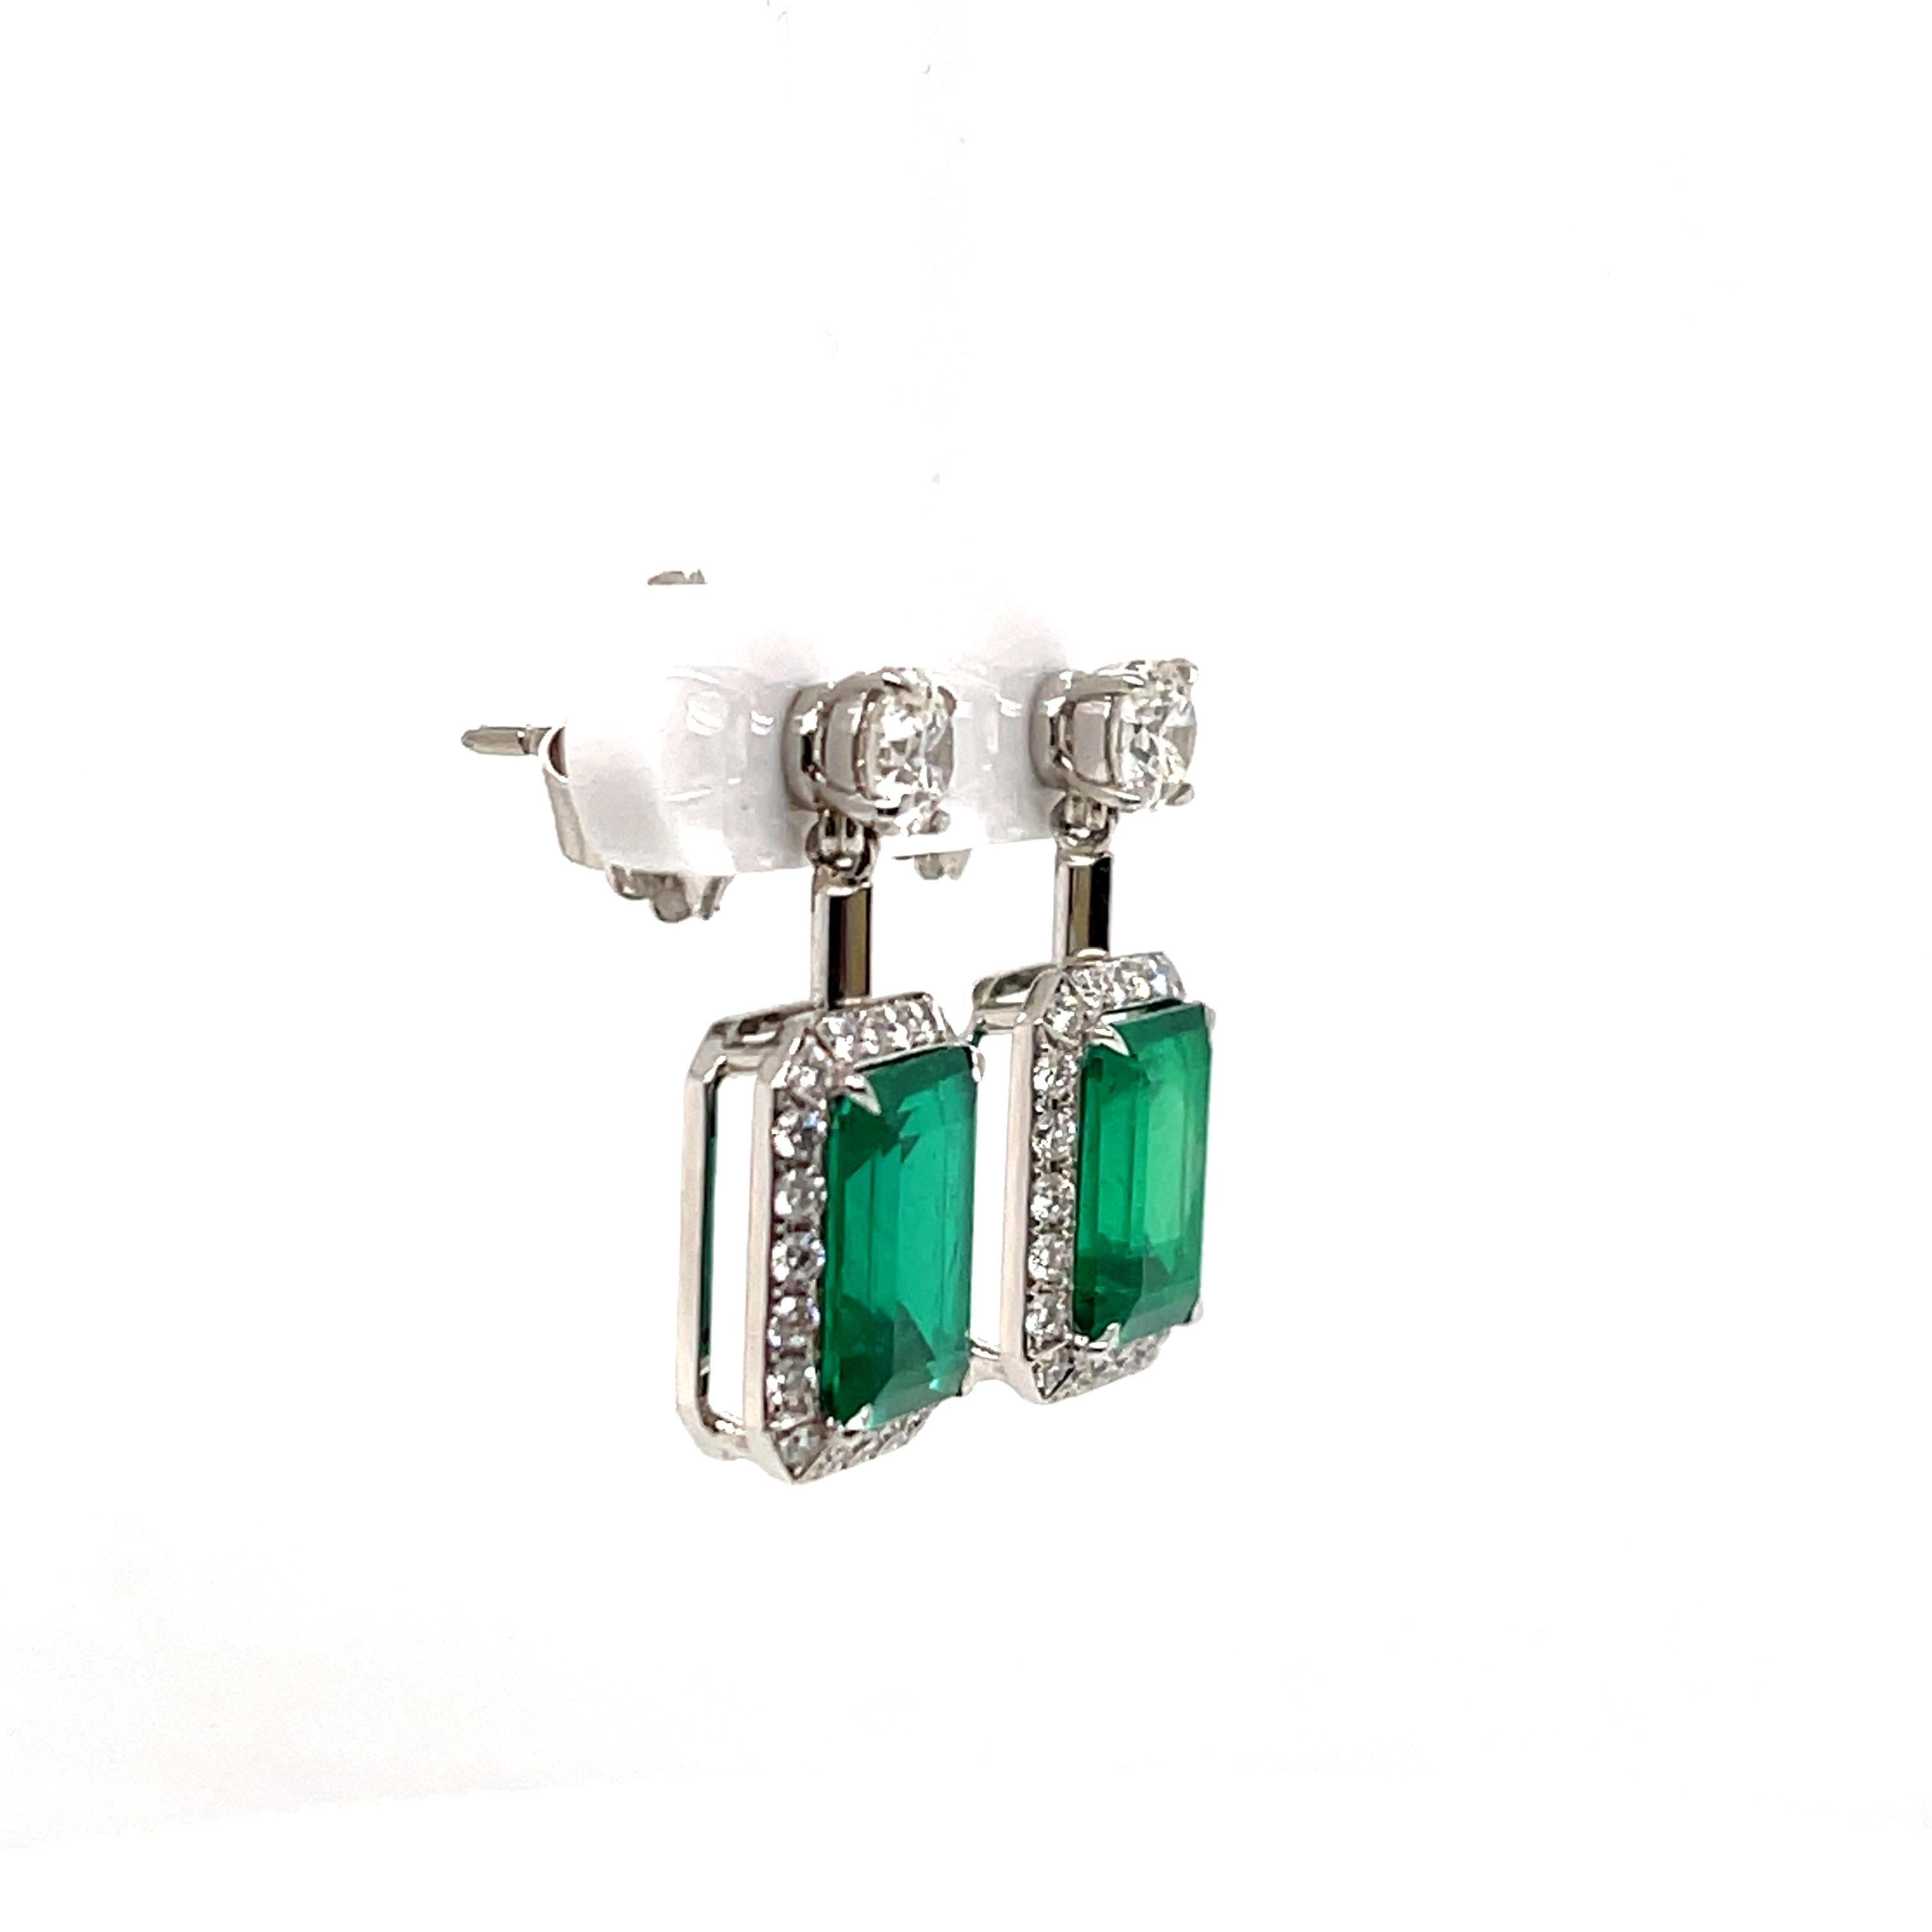 Des émeraudes de Colombie d'un vert éclatant et des diamants blancs étincelants sont toujours une excellente combinaison, et cette paire de boucles d'oreilles contemporaines en est le parfait exemple.  C'est le vert riche et chaud qui rend les